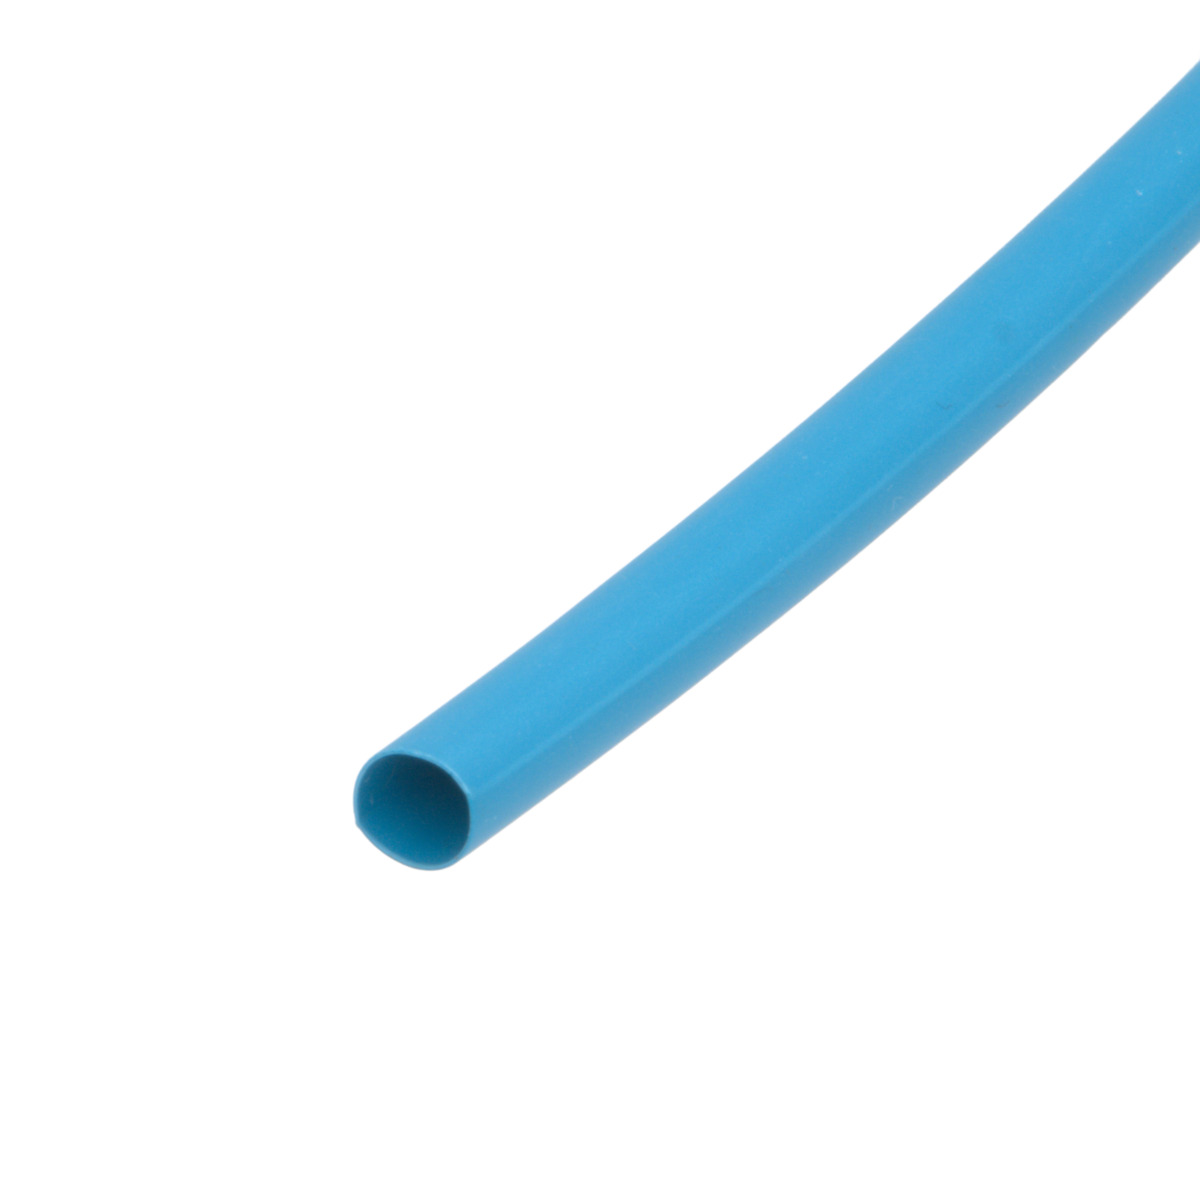 Pack de corte [1.2m] de tubo termorretráctil 2:1 Ø25.4mm azul – Poliolefina libre de halógeno e ignífugo [x5]